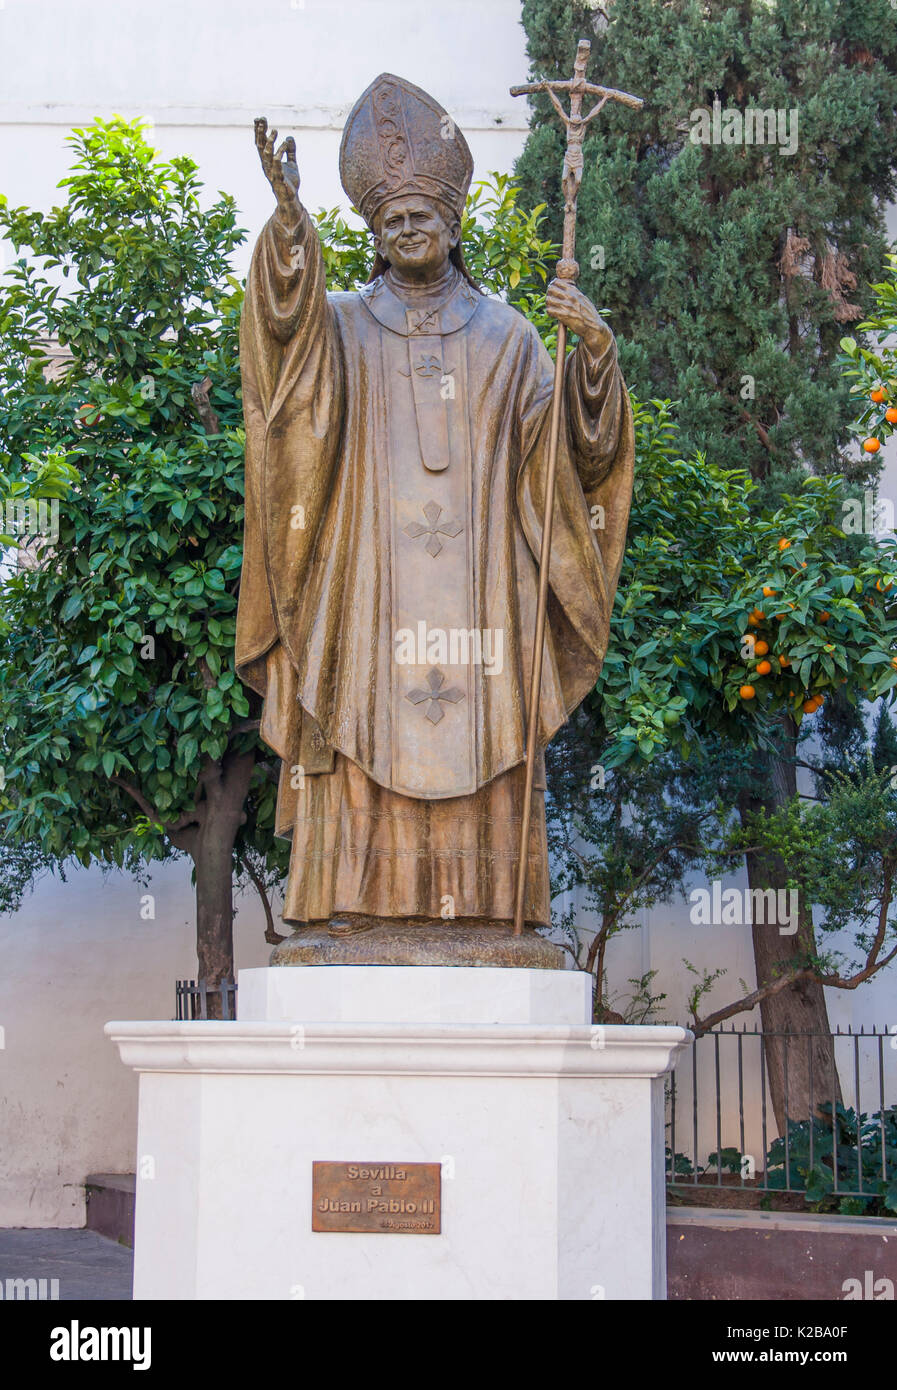 Plaza Virgen de los Reyes, Sevilla, Spanien. Statue von Papst Johannes Paul II., 1920 - 2005. Papst von 1978 bis 2005. Stockfoto